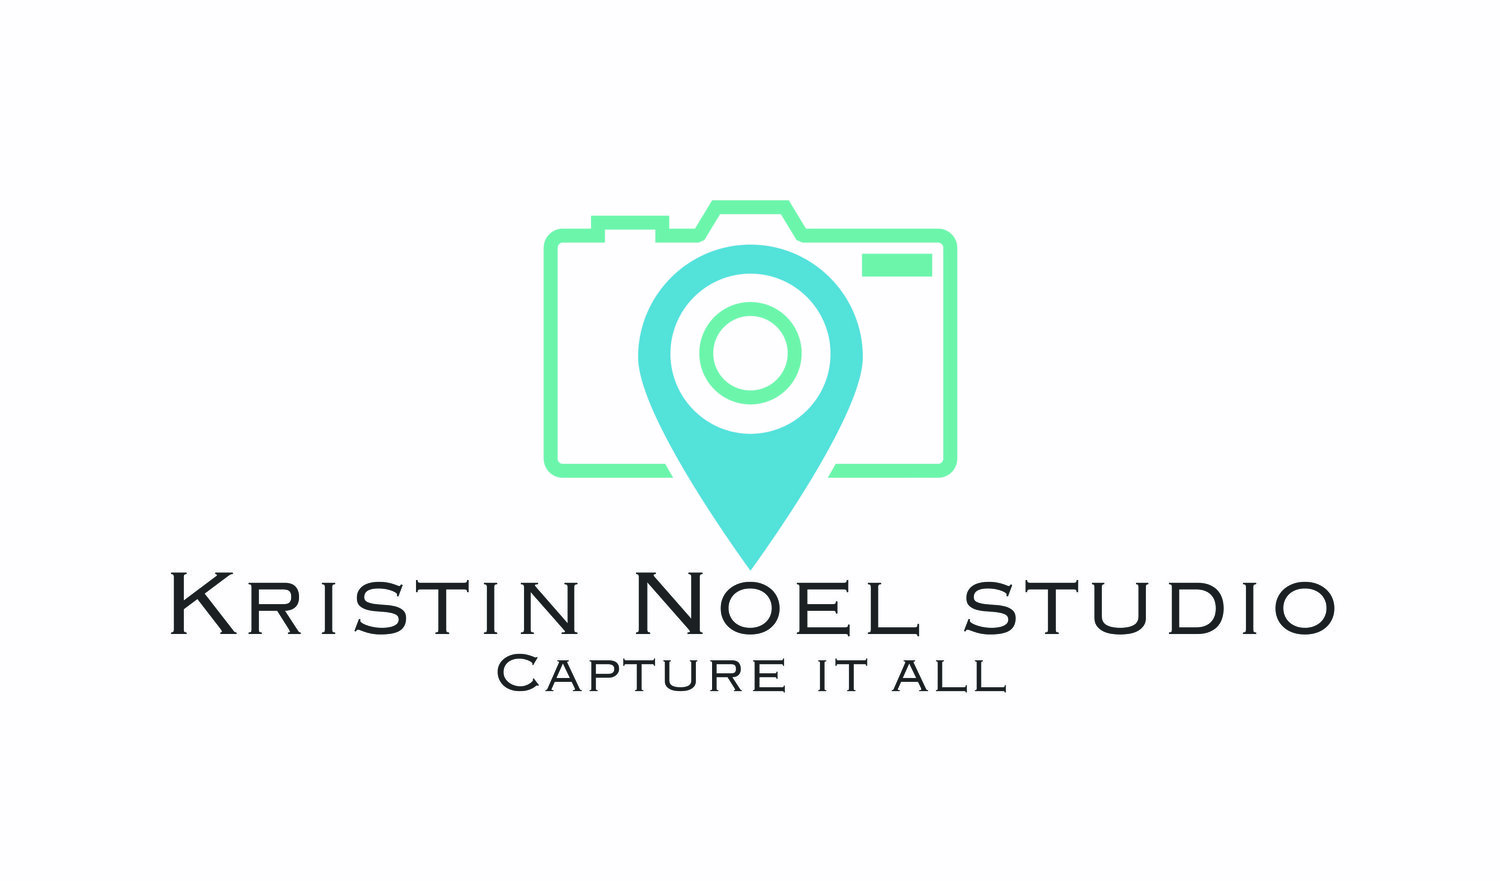 Kristin Noel Studio